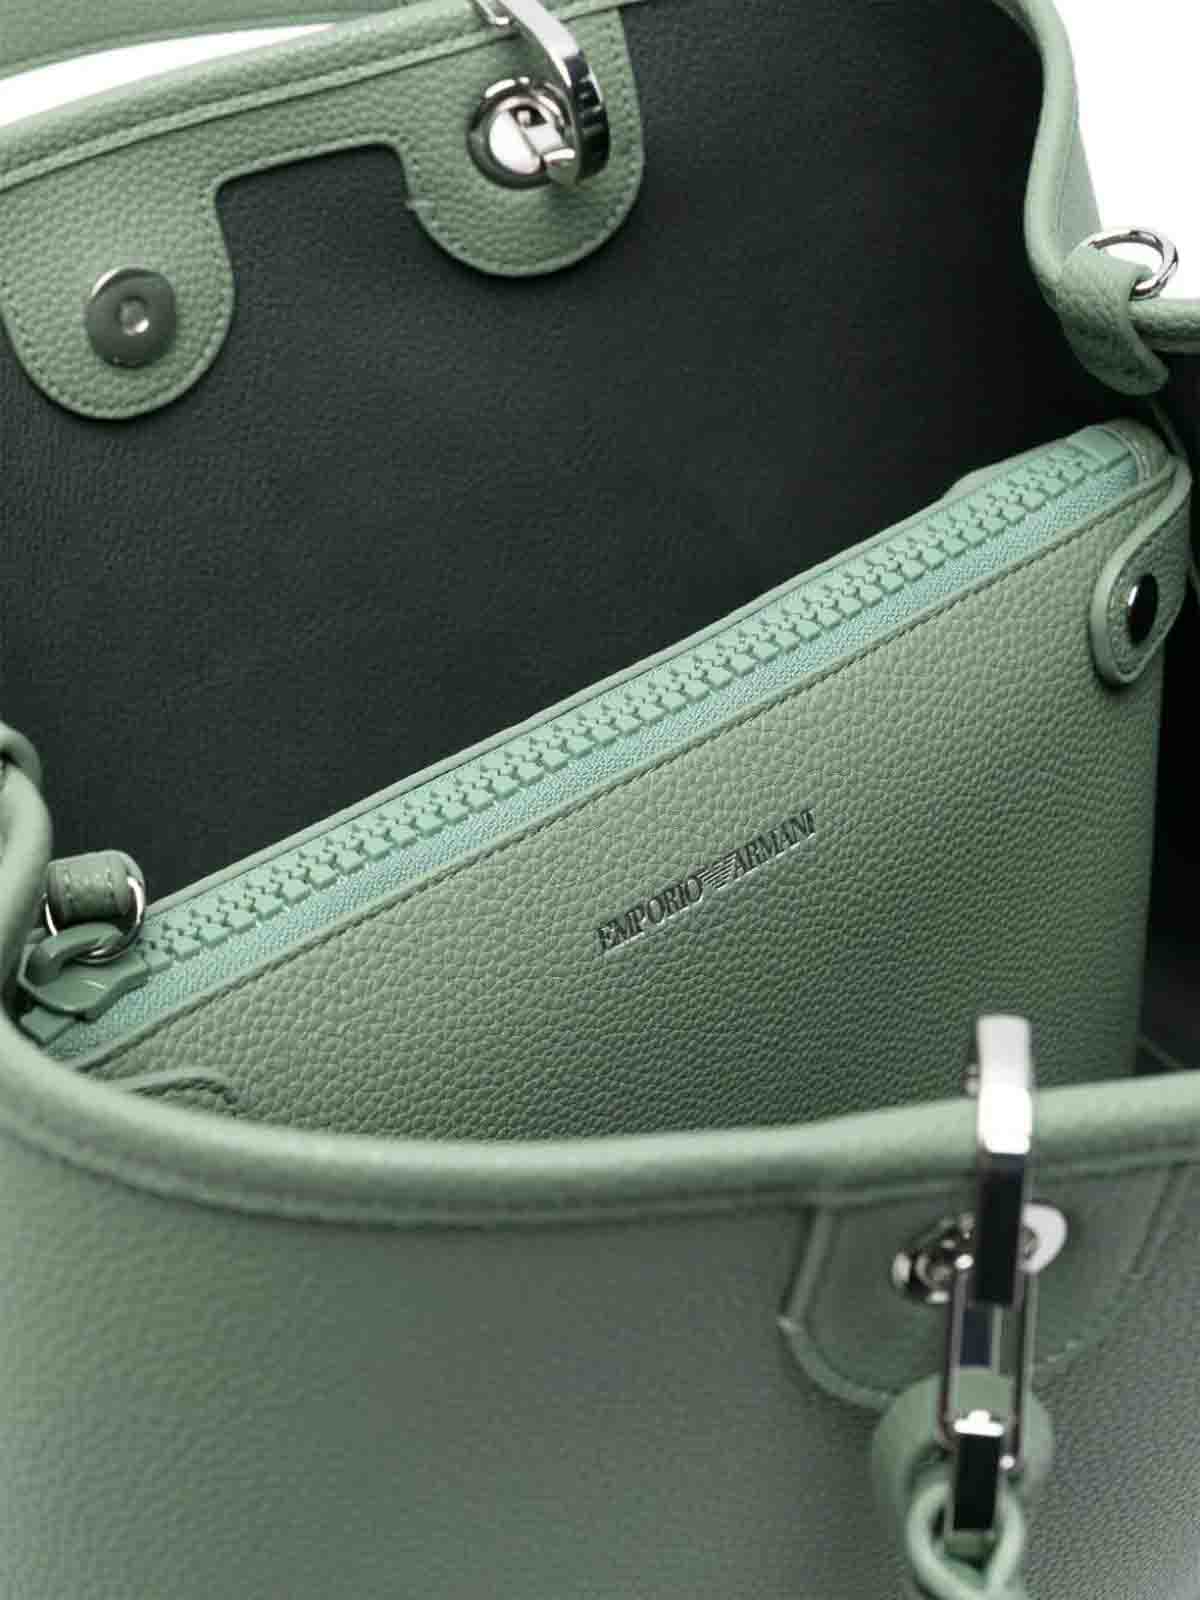 Shop Emporio Armani Shopping Bag In Green